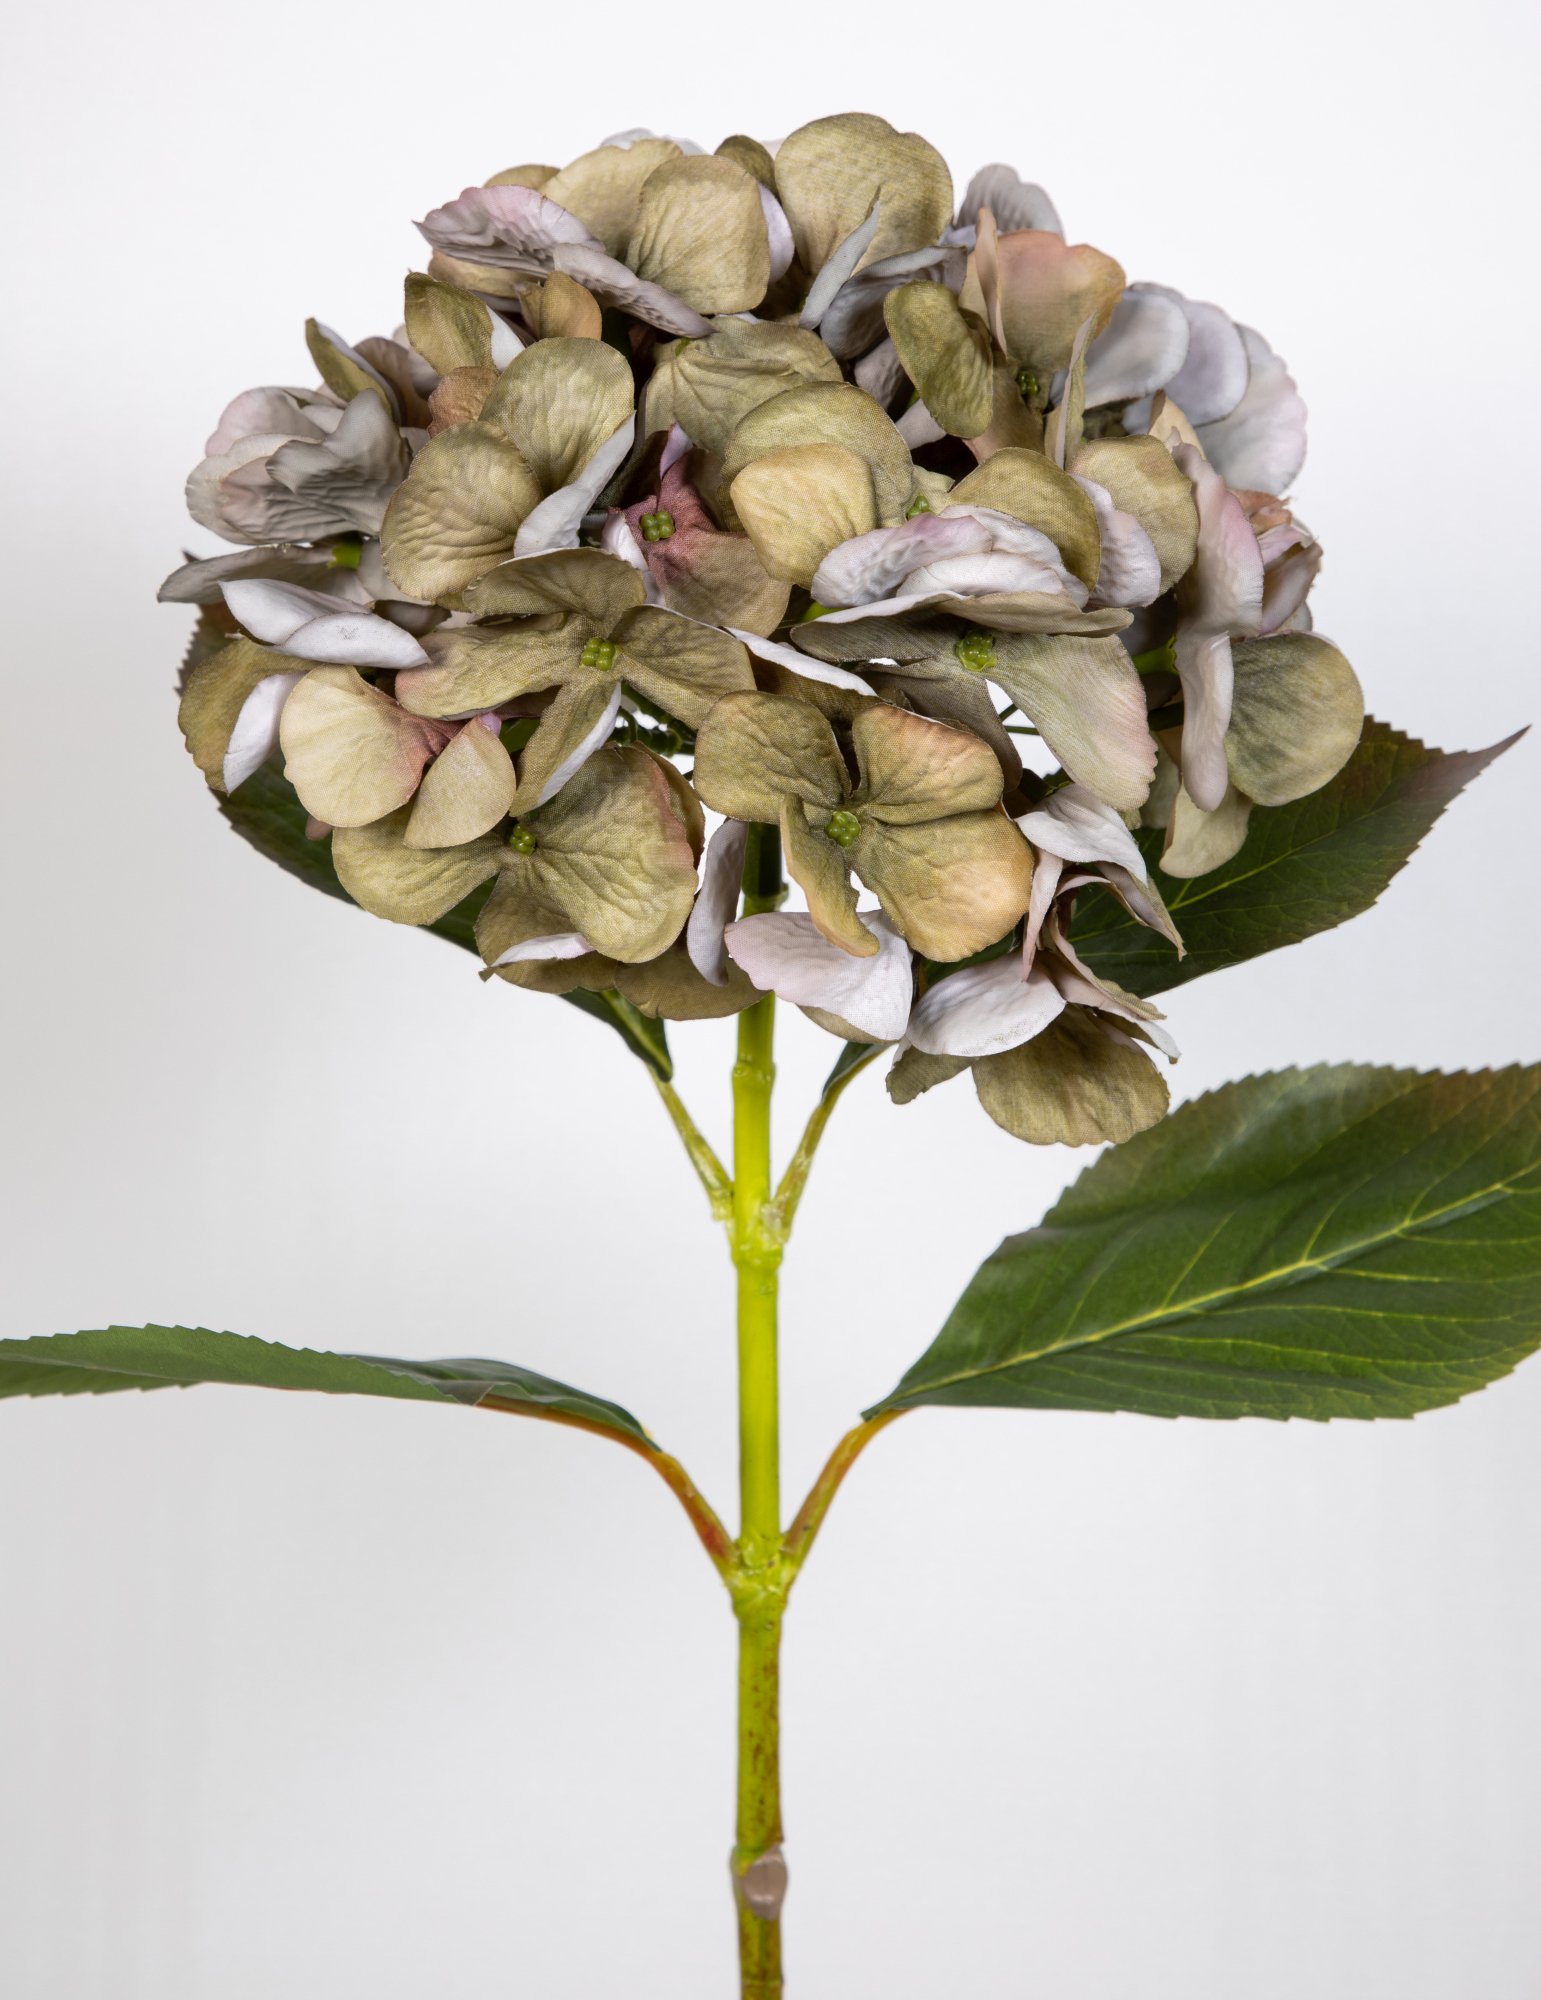 Hortensie Hydrangea Blumen Seidenblumen 68cm GA Hortensien Kunstlbumen grün-hellrosa künstliche